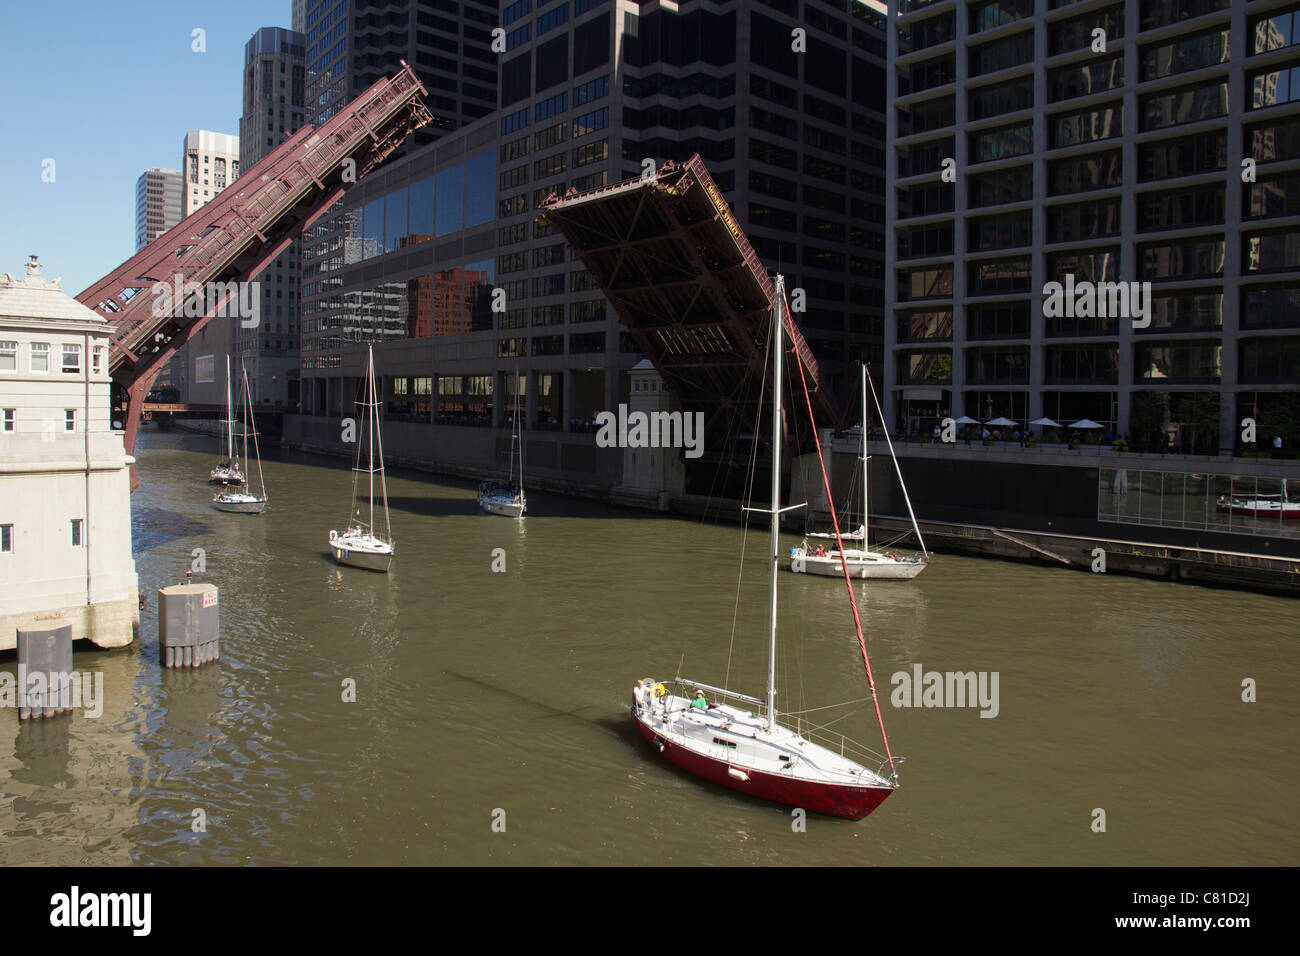 Segelboote übergeben die Monroe Street Zugbrücke über den Chicago River. Die Boote sind für den Winter, Bootswerften unterwegs. Stockfoto